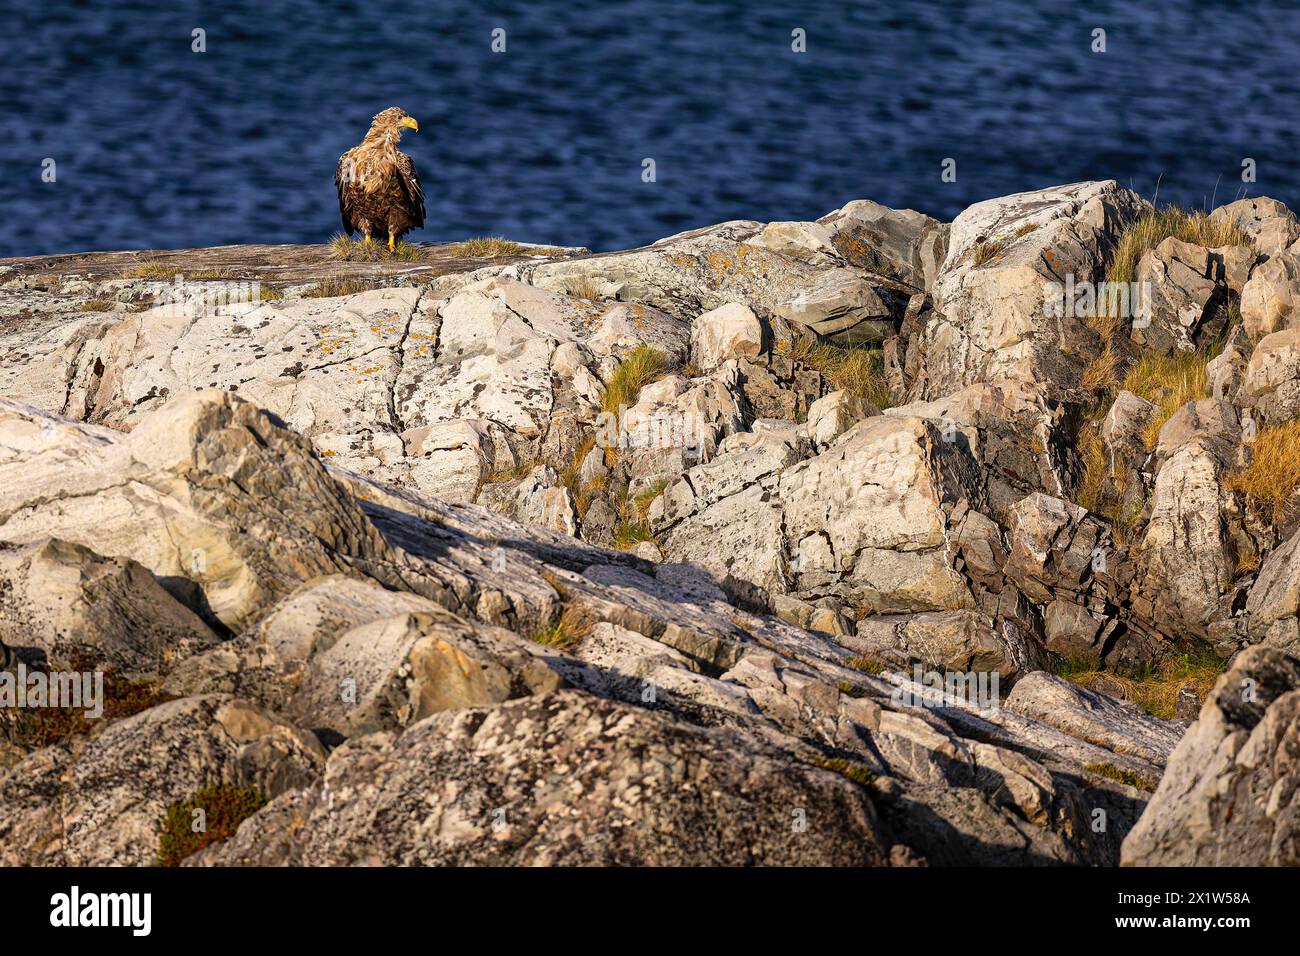 Aquila dalla coda bianca (Haliaeetus albicilla), uccello adulto seduto su una roccia coperta di licheni, Varanger, Finnmark, Norvegia Foto Stock